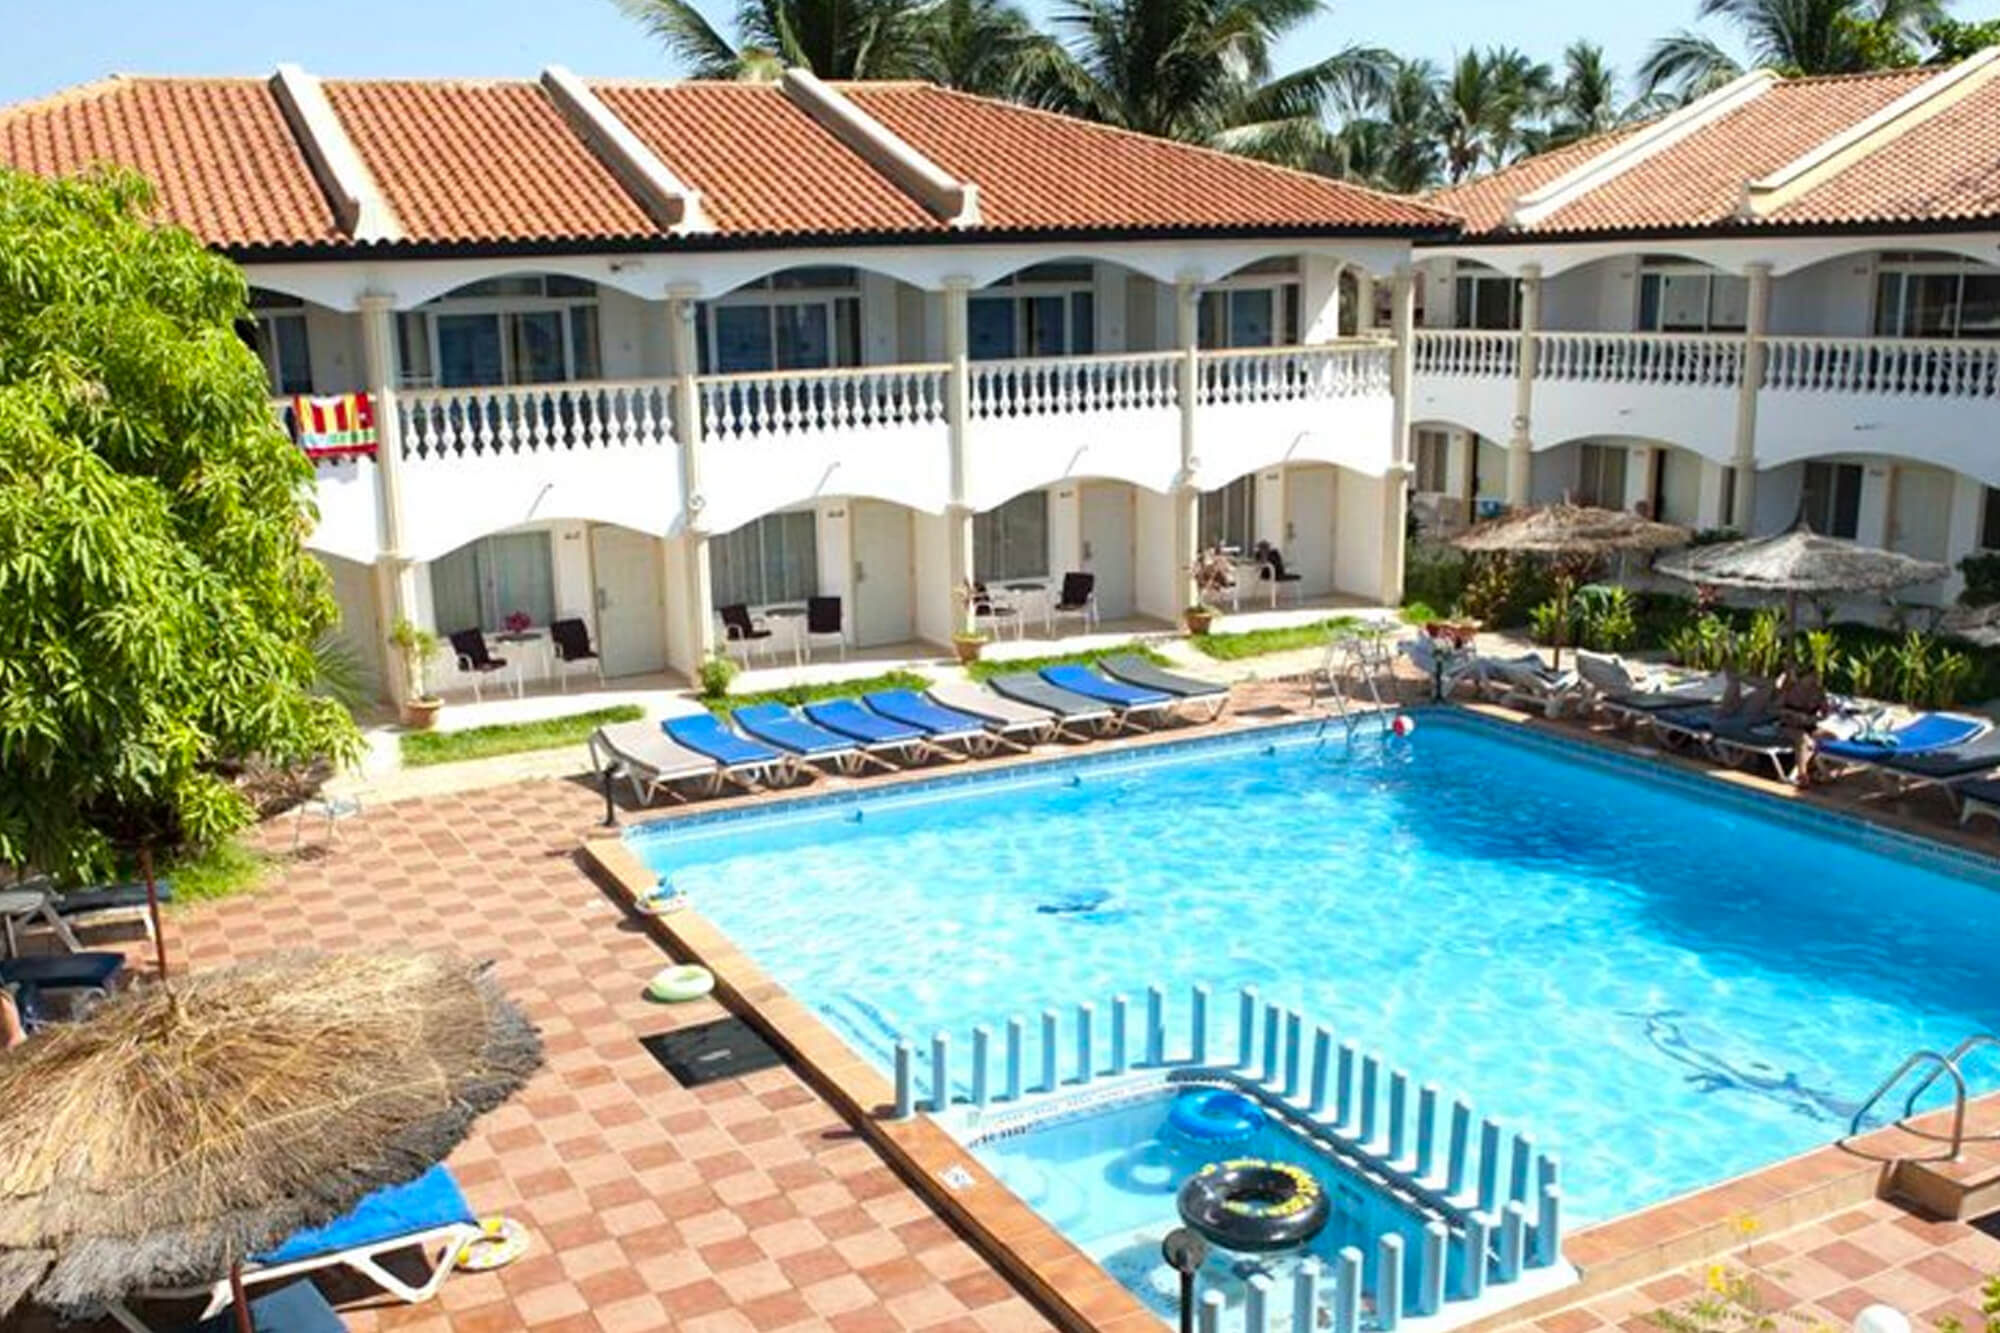 Zwembad van het Cape Point hotel in Gambia